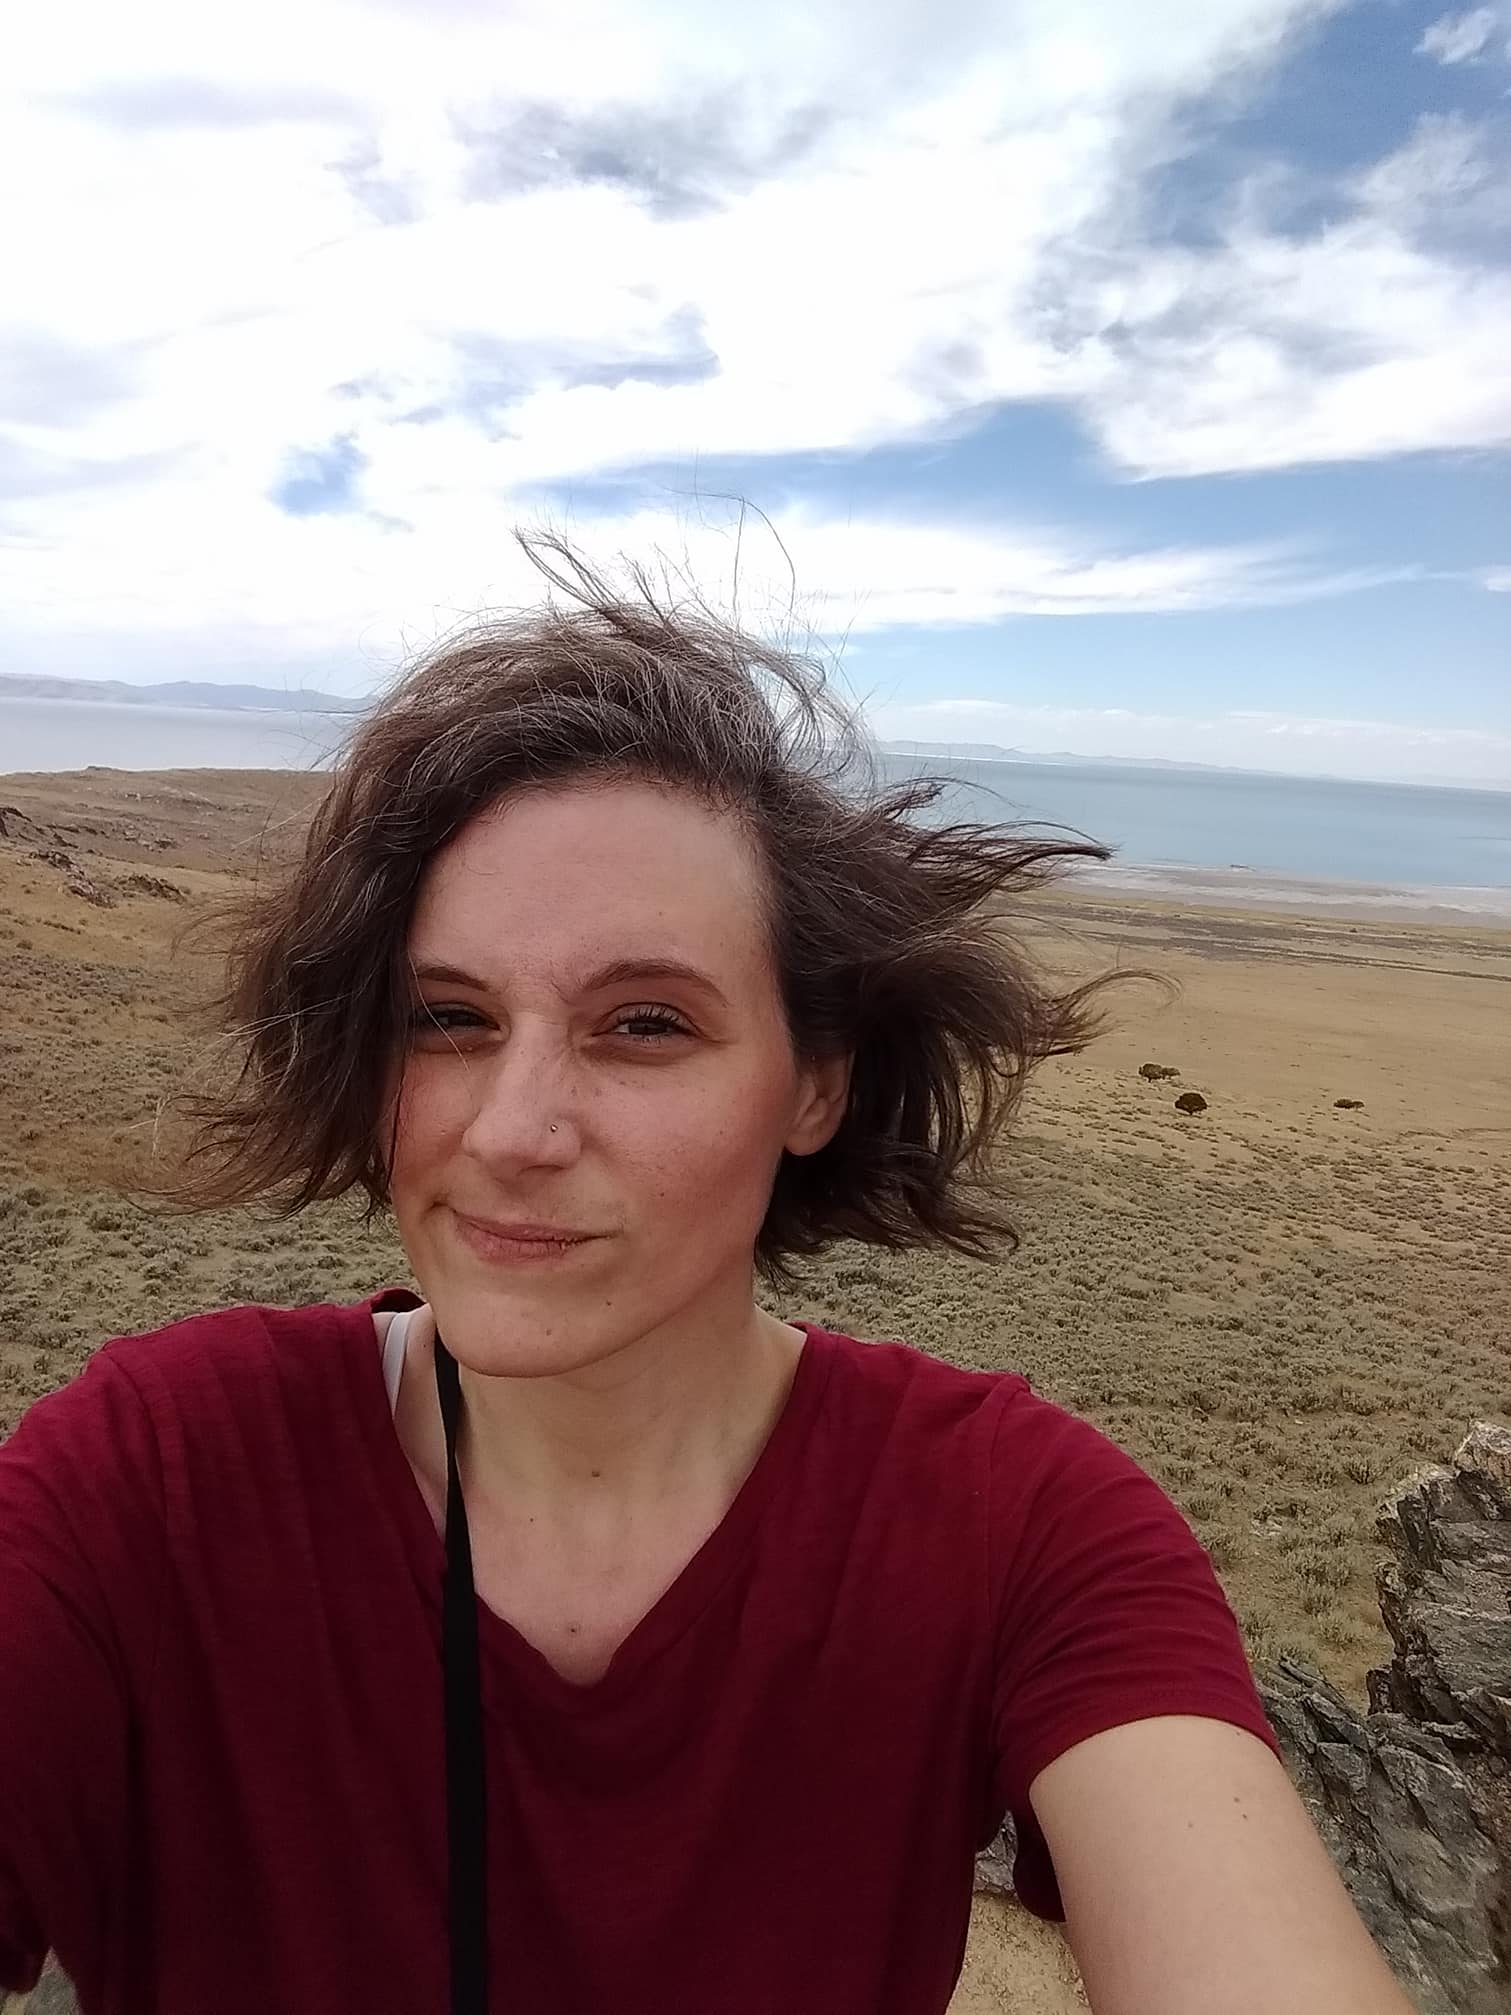 Me on Antelope Island in Utah